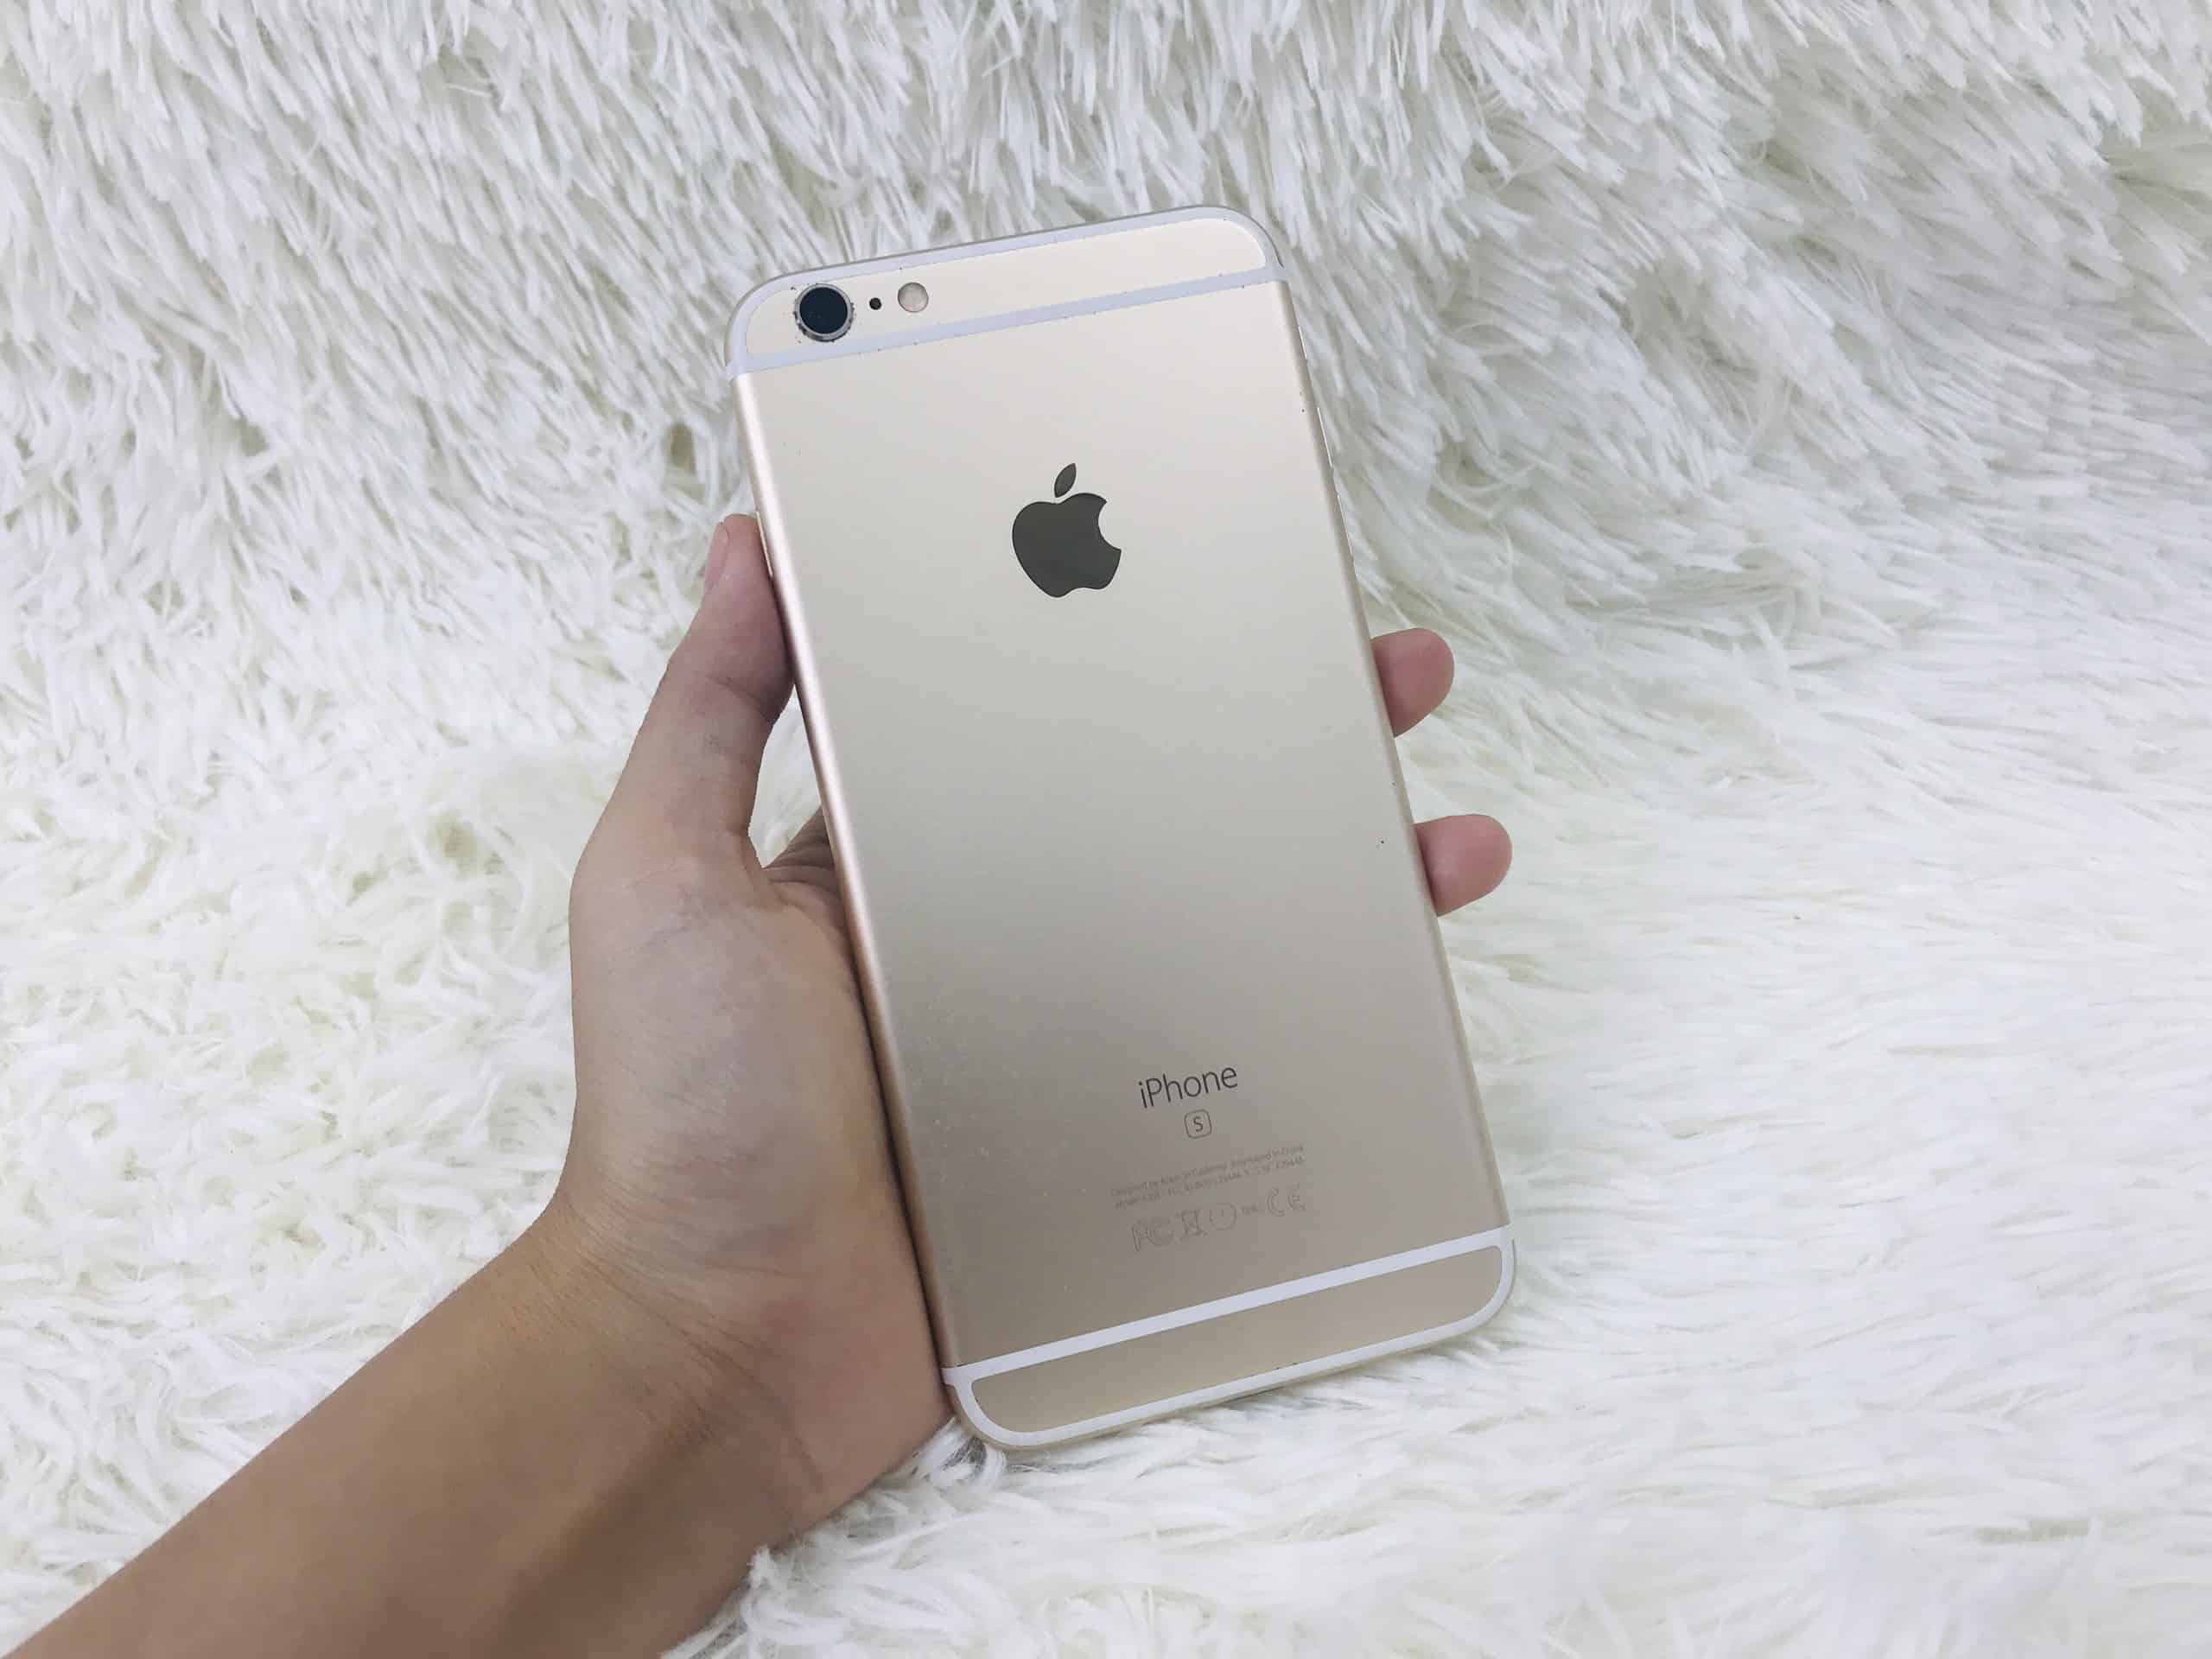 Tư vấn điện thoại iPhone 6 hơn 1 TRIỆU có đáng mua không? - YouTube